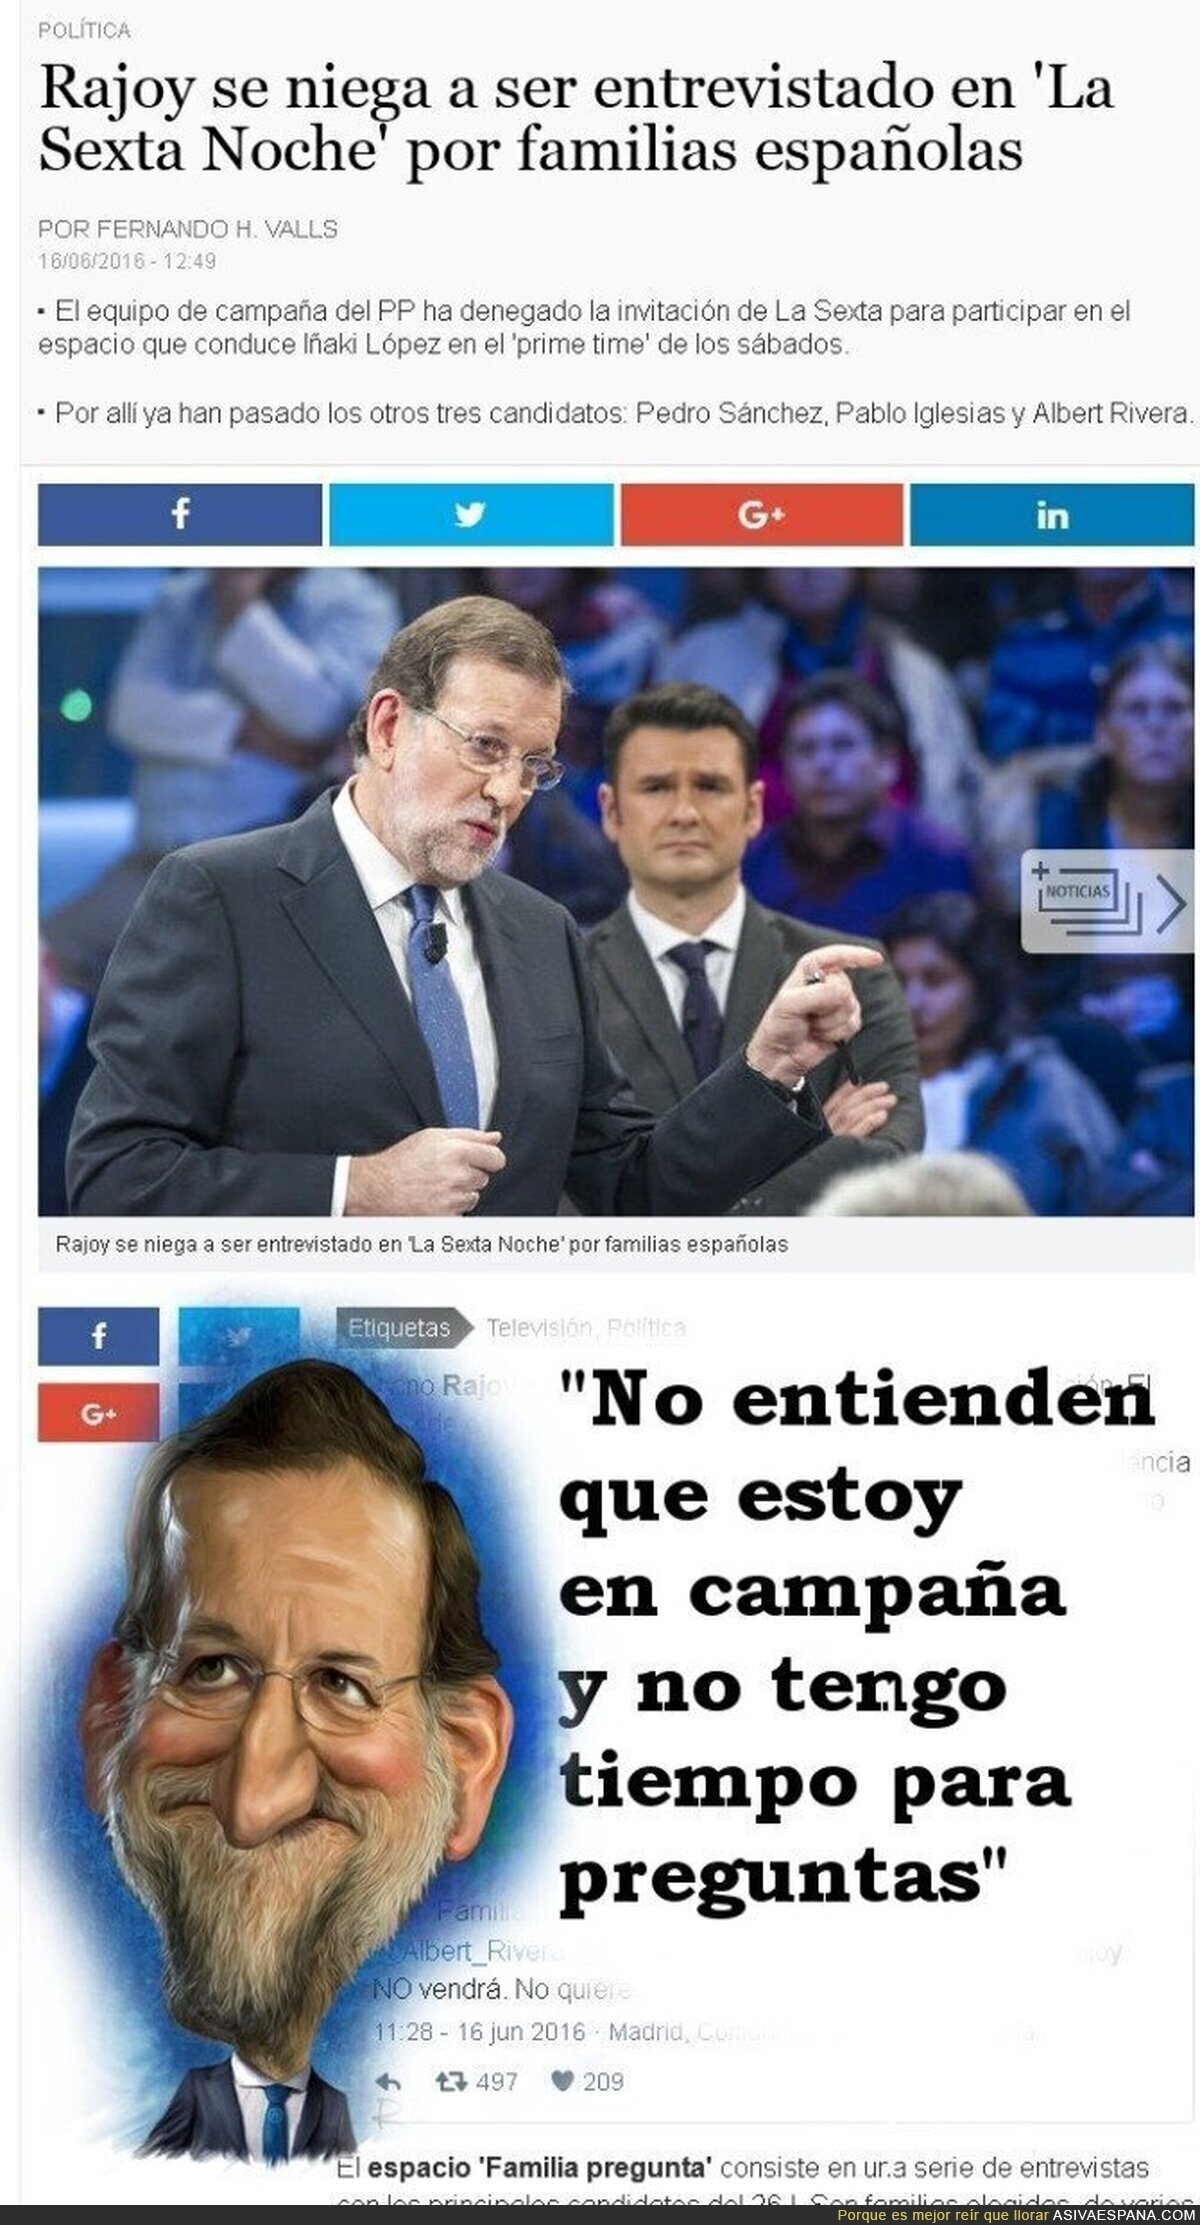 Rajoy está en campaña, no acepta preguntas.